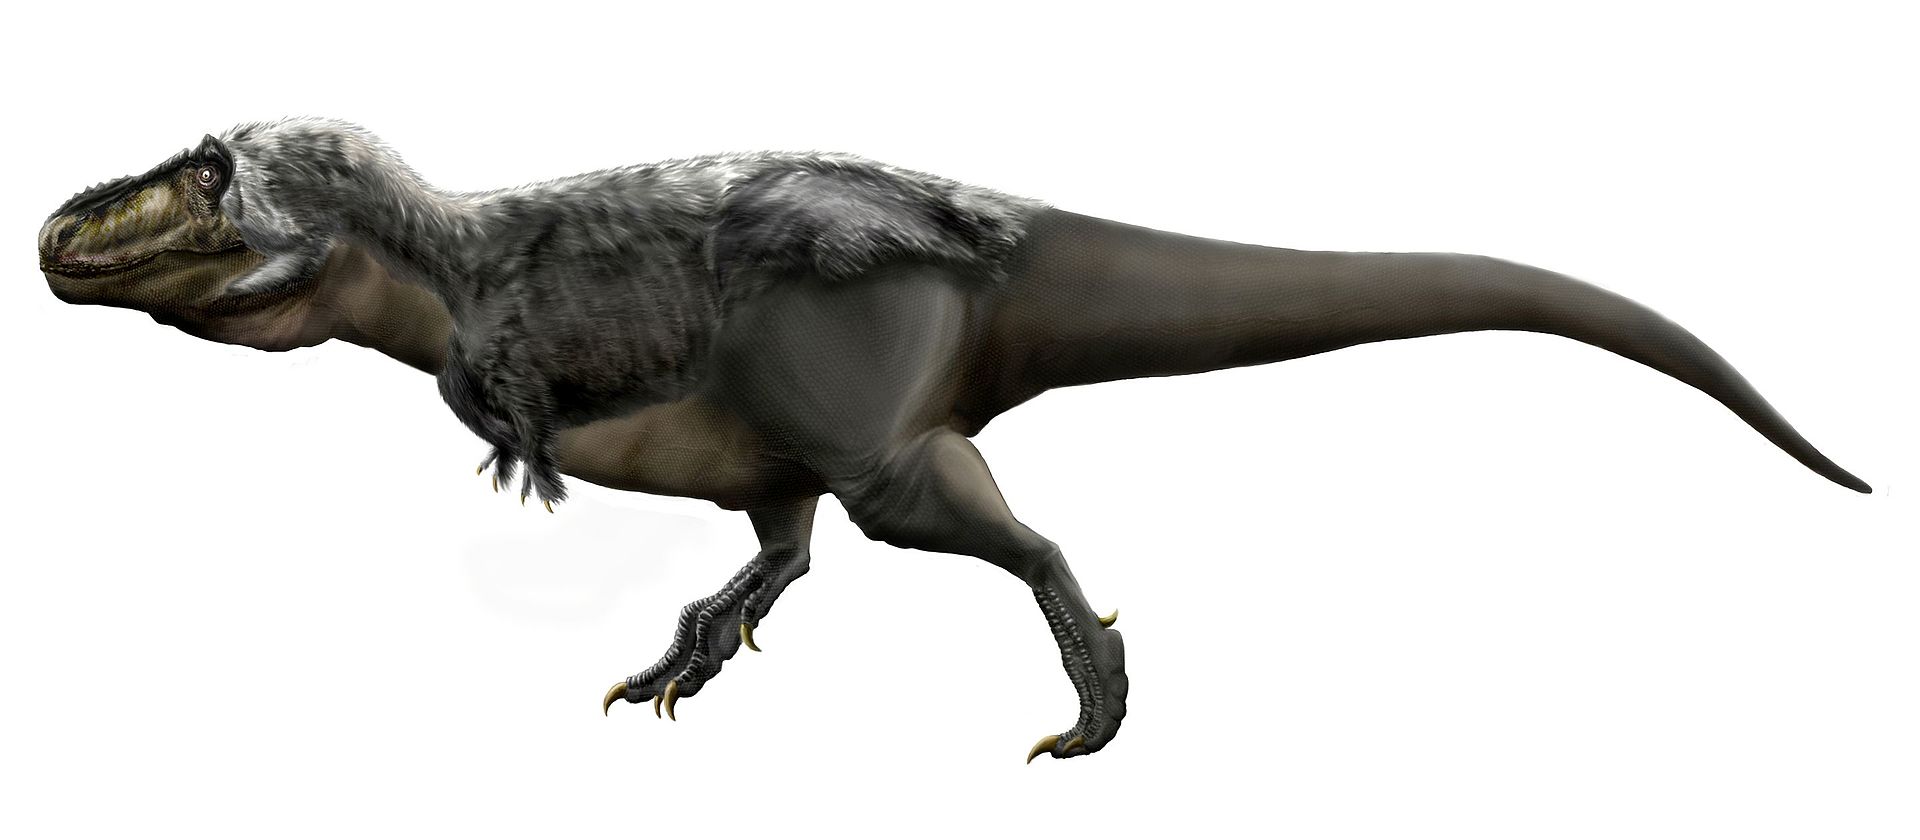 Moderní představa o vzezření pozdně křídového tyranosauridního teropoda druhu Tyrannosaurus rex. Tento obří několikatunový masožravec obýval území západu Severní Ameriky v době před 68 až 66 miliony let. Dnes je ikonou populární kultury a patří k nej